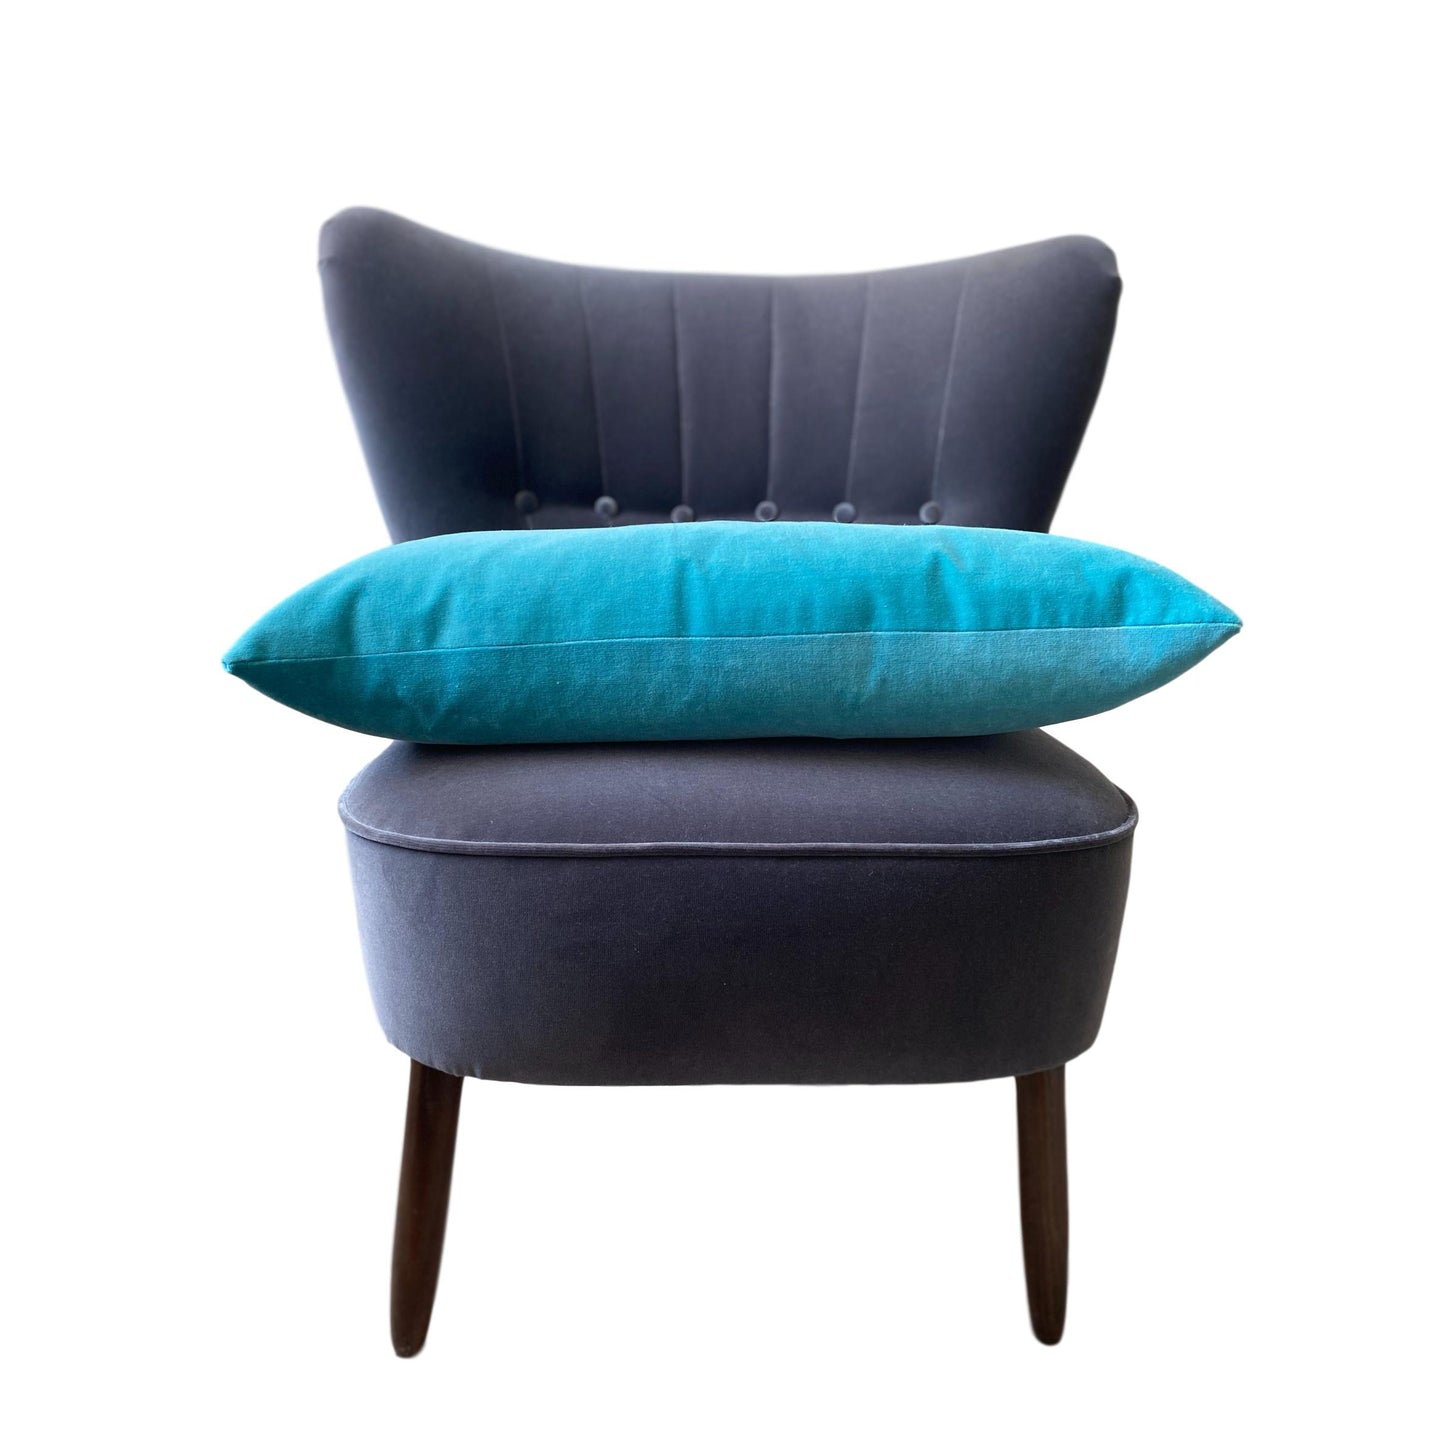 Turquoise Velvet Cushion Cover